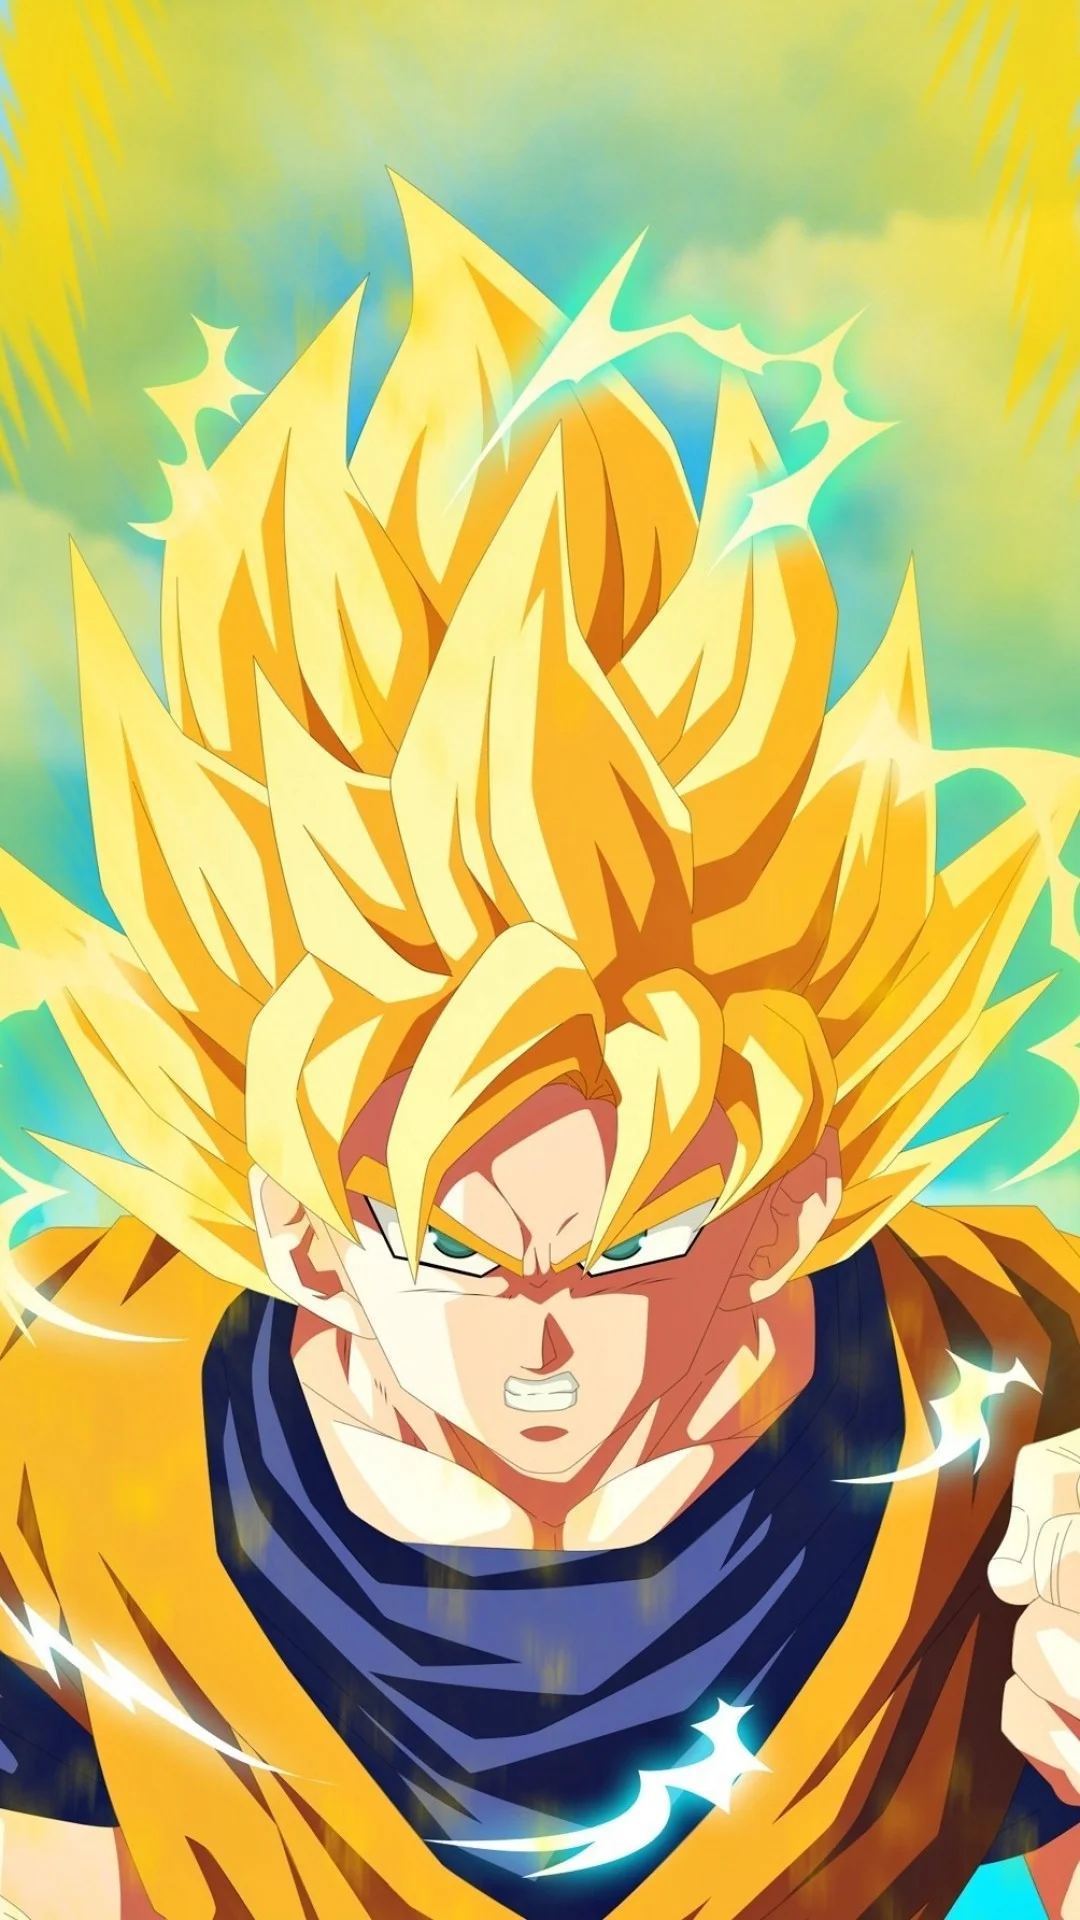 Goku Wallpaper 4k For Mobile Goku Anime Characters